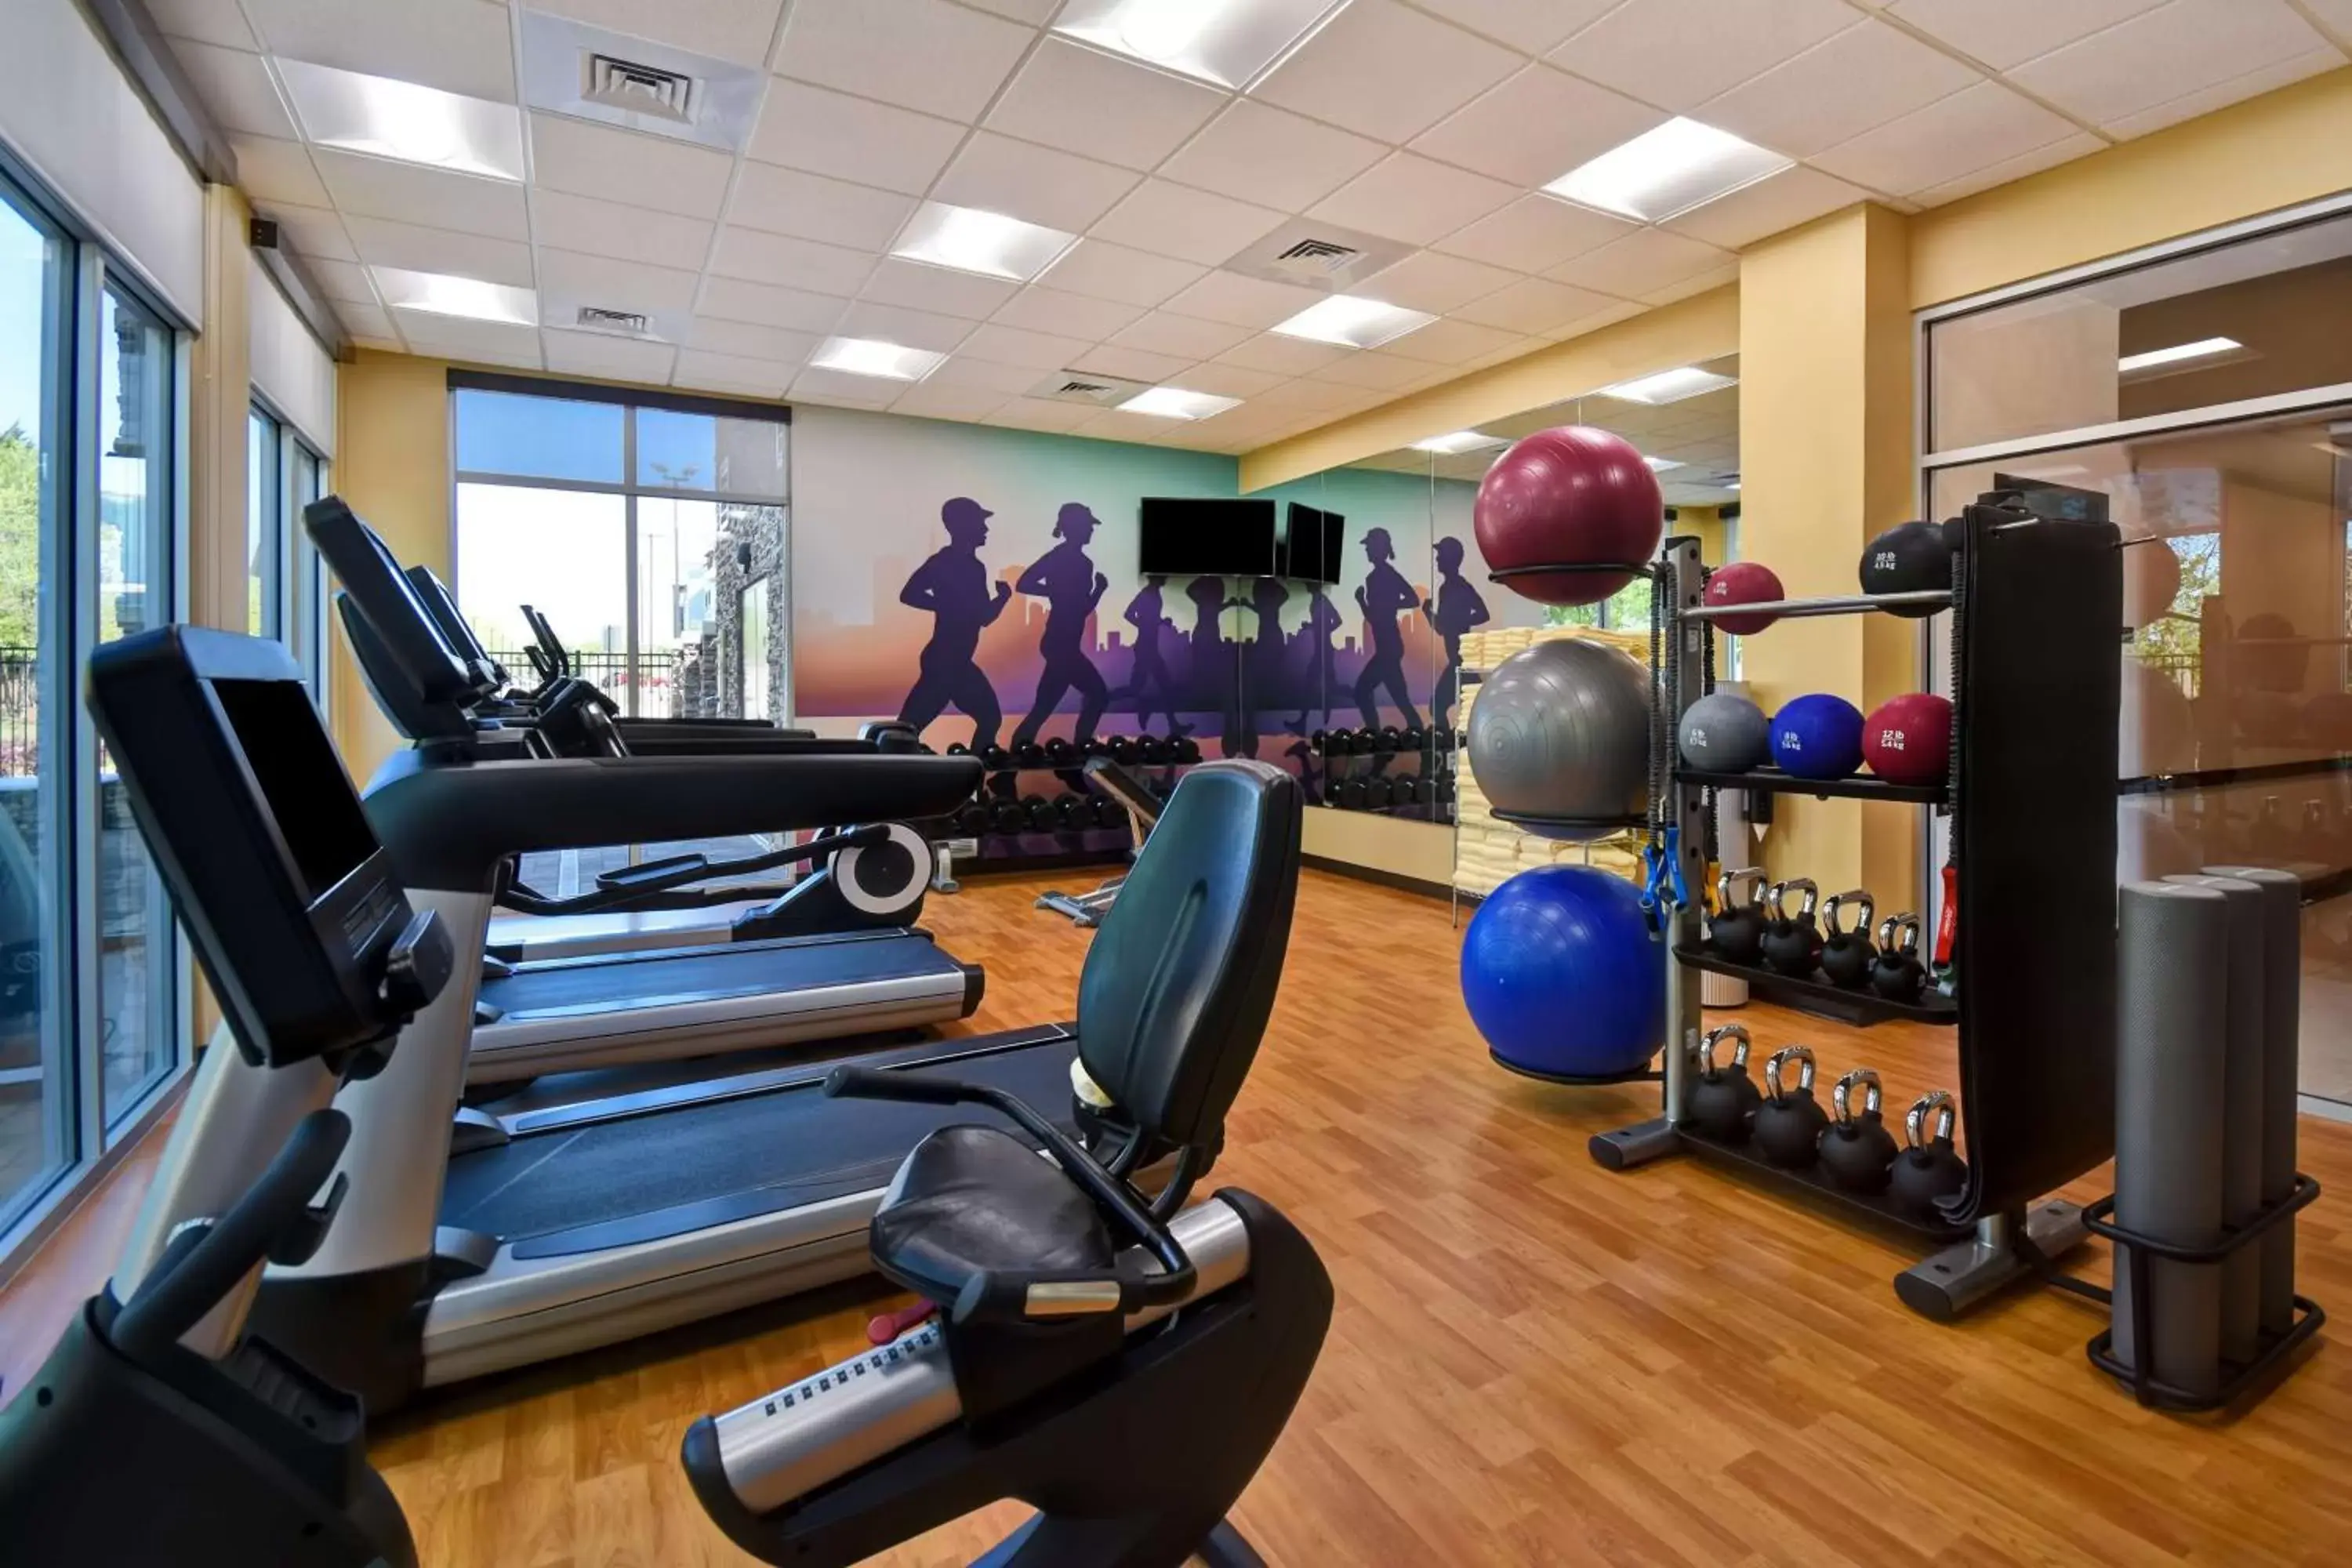 Fitness centre/facilities, Fitness Center/Facilities in Hyatt Place Huntsville